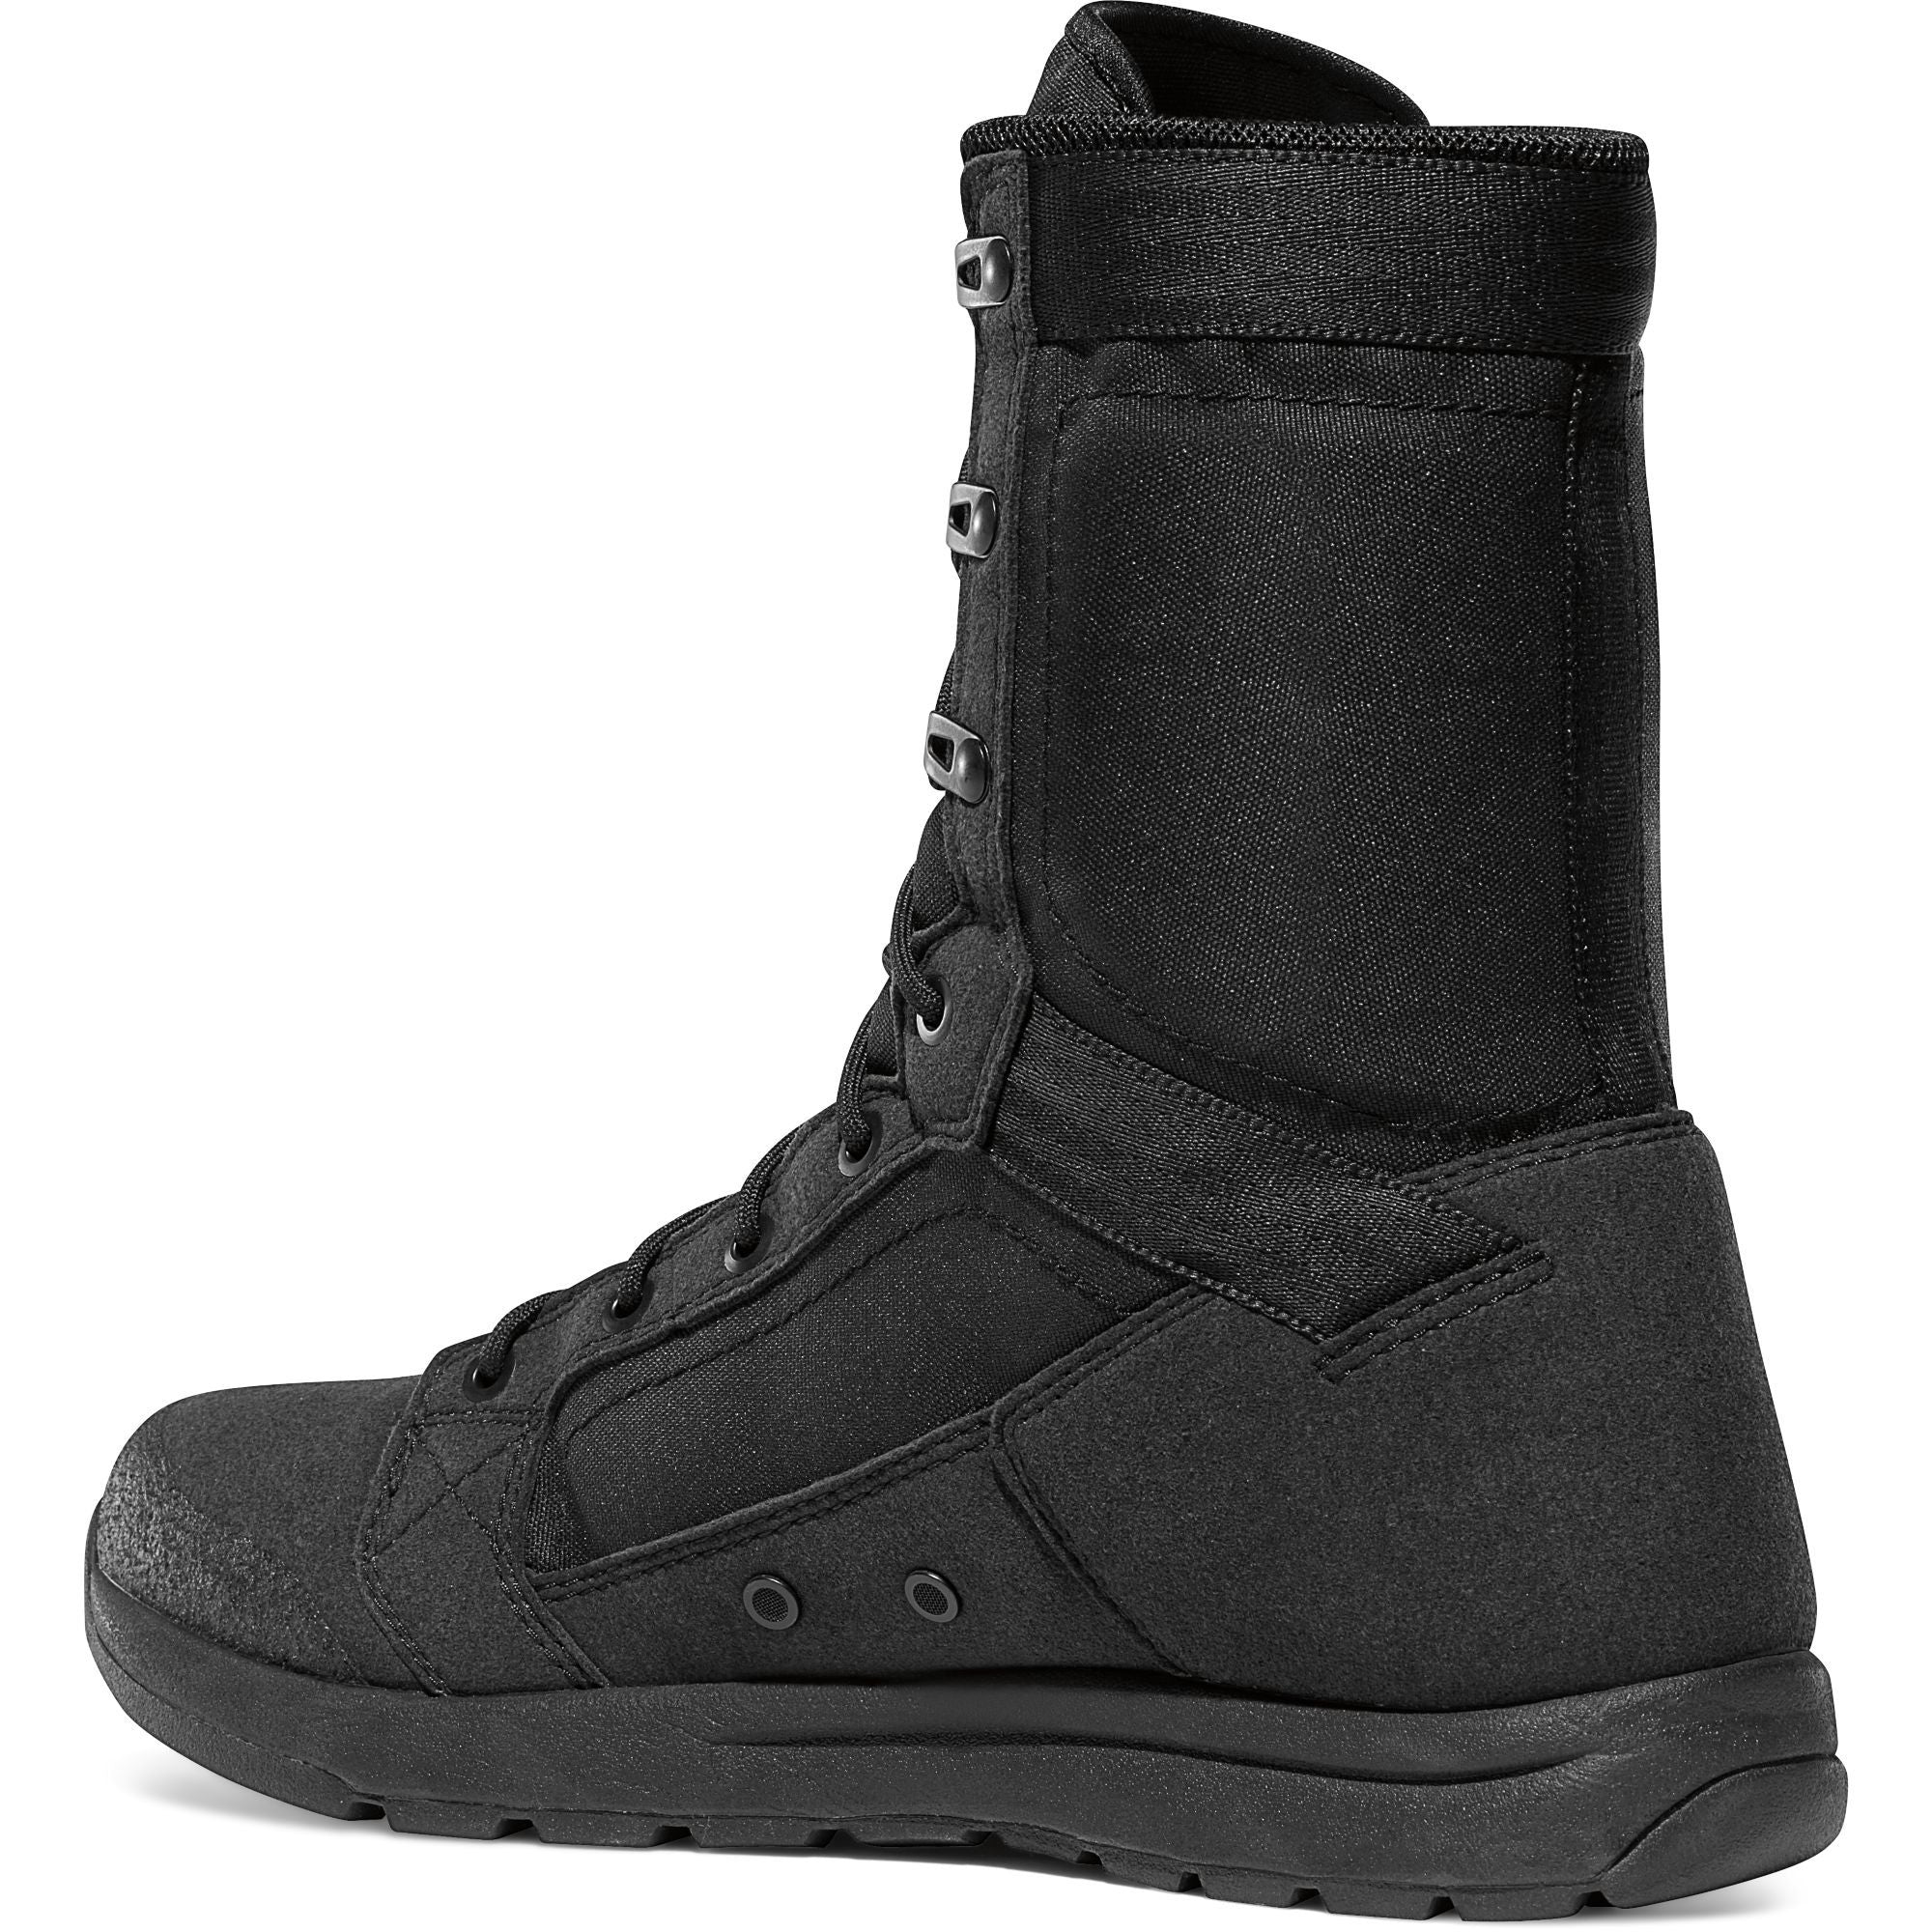 Danner Men's Tachayon Duty Boot - Black - 50120  - Overlook Boots